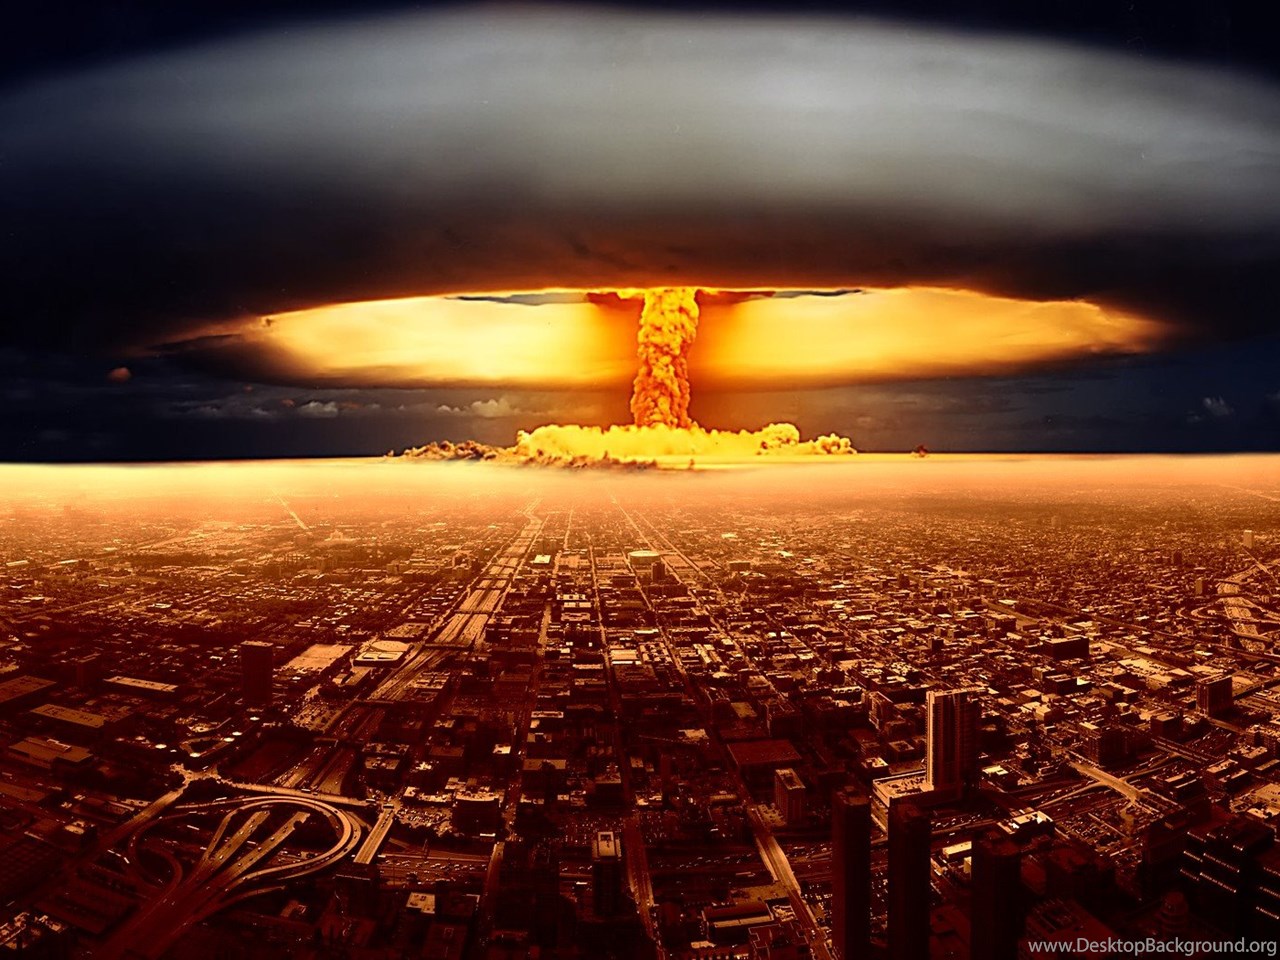 Nu susții suficient Ucraina până nu simți în față Explozia Nucleară!